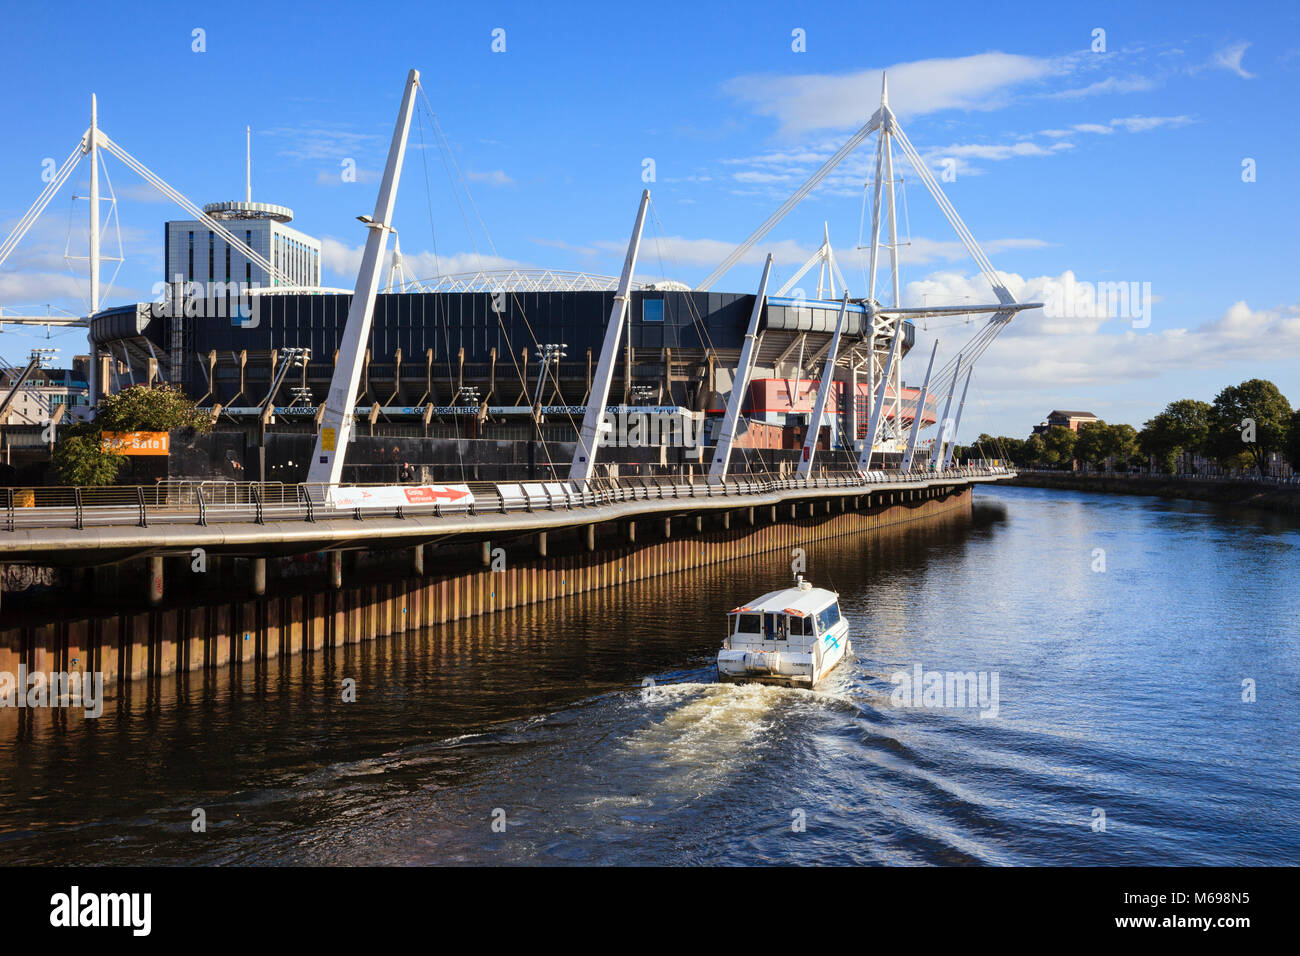 Principauté de Cardiff Stadium football et rugby avec passage en bateau-taxi sur la rivière Taff. Cardiff (Caerdydd) South Glamorgan Wales Royaume-uni Grande-Bretagne Banque D'Images